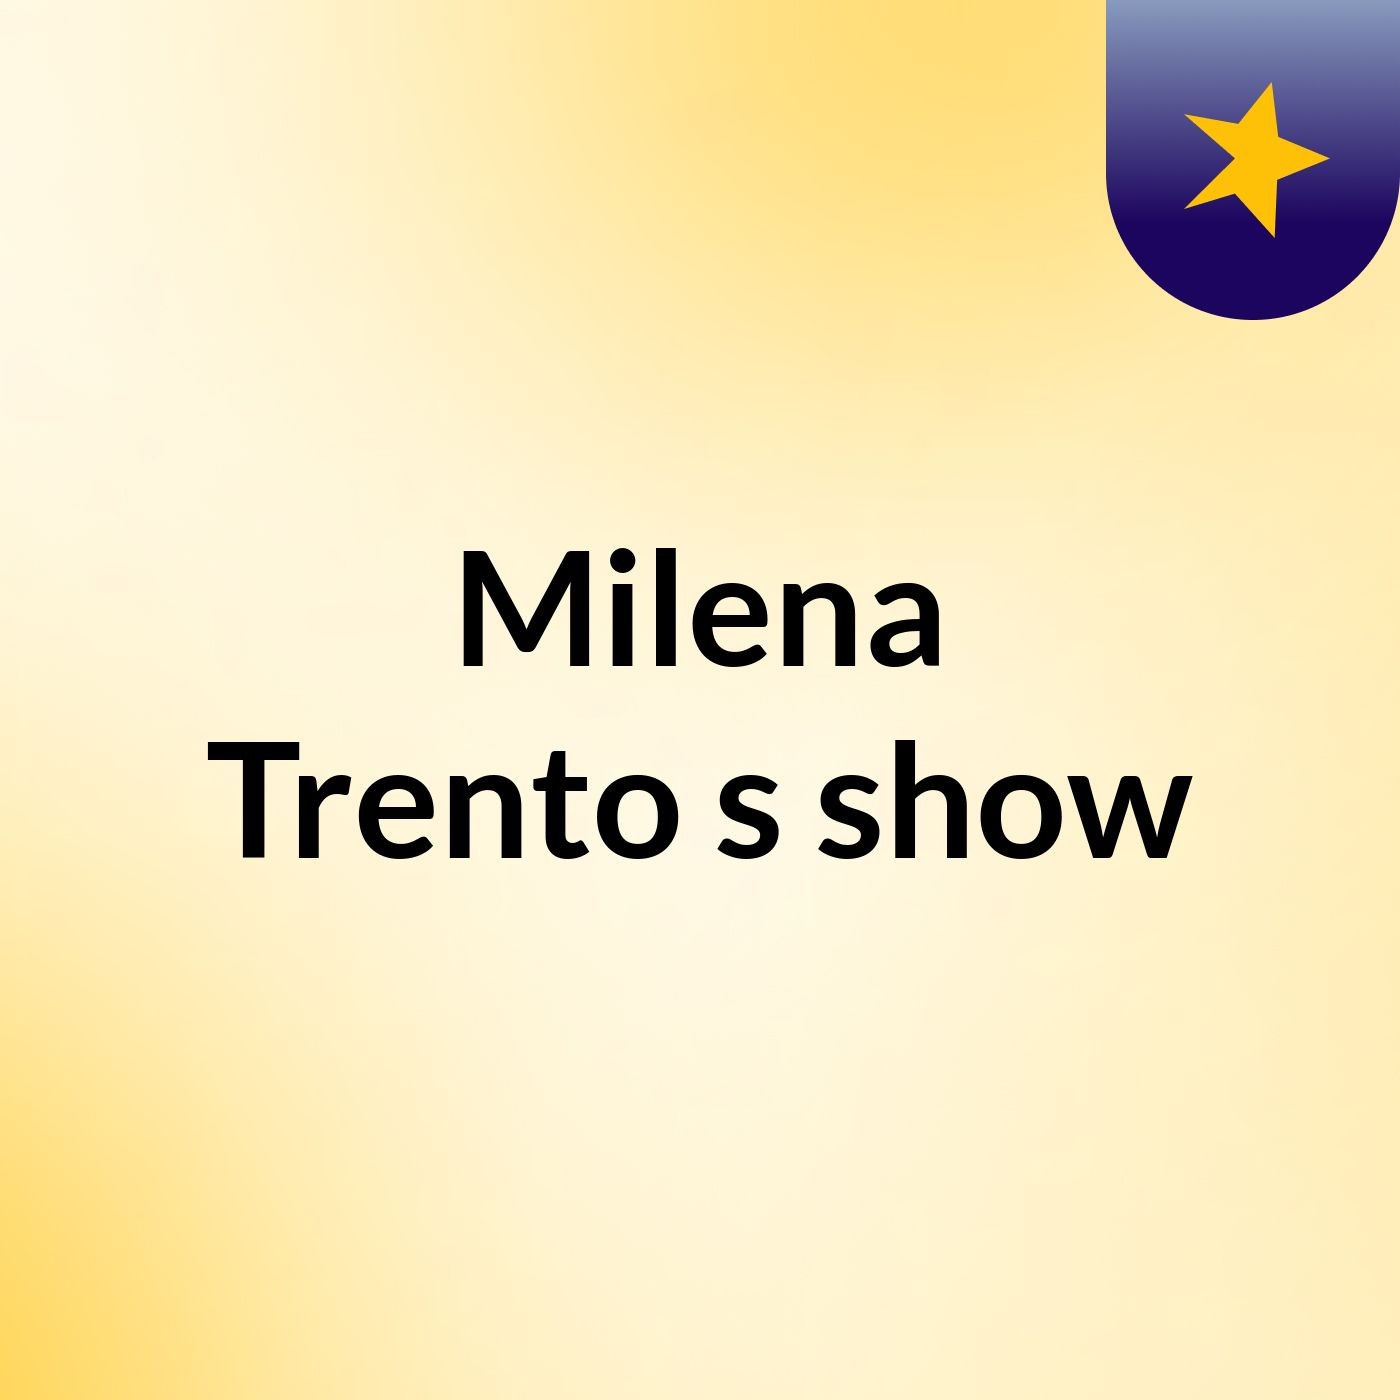 Milena Trento's show